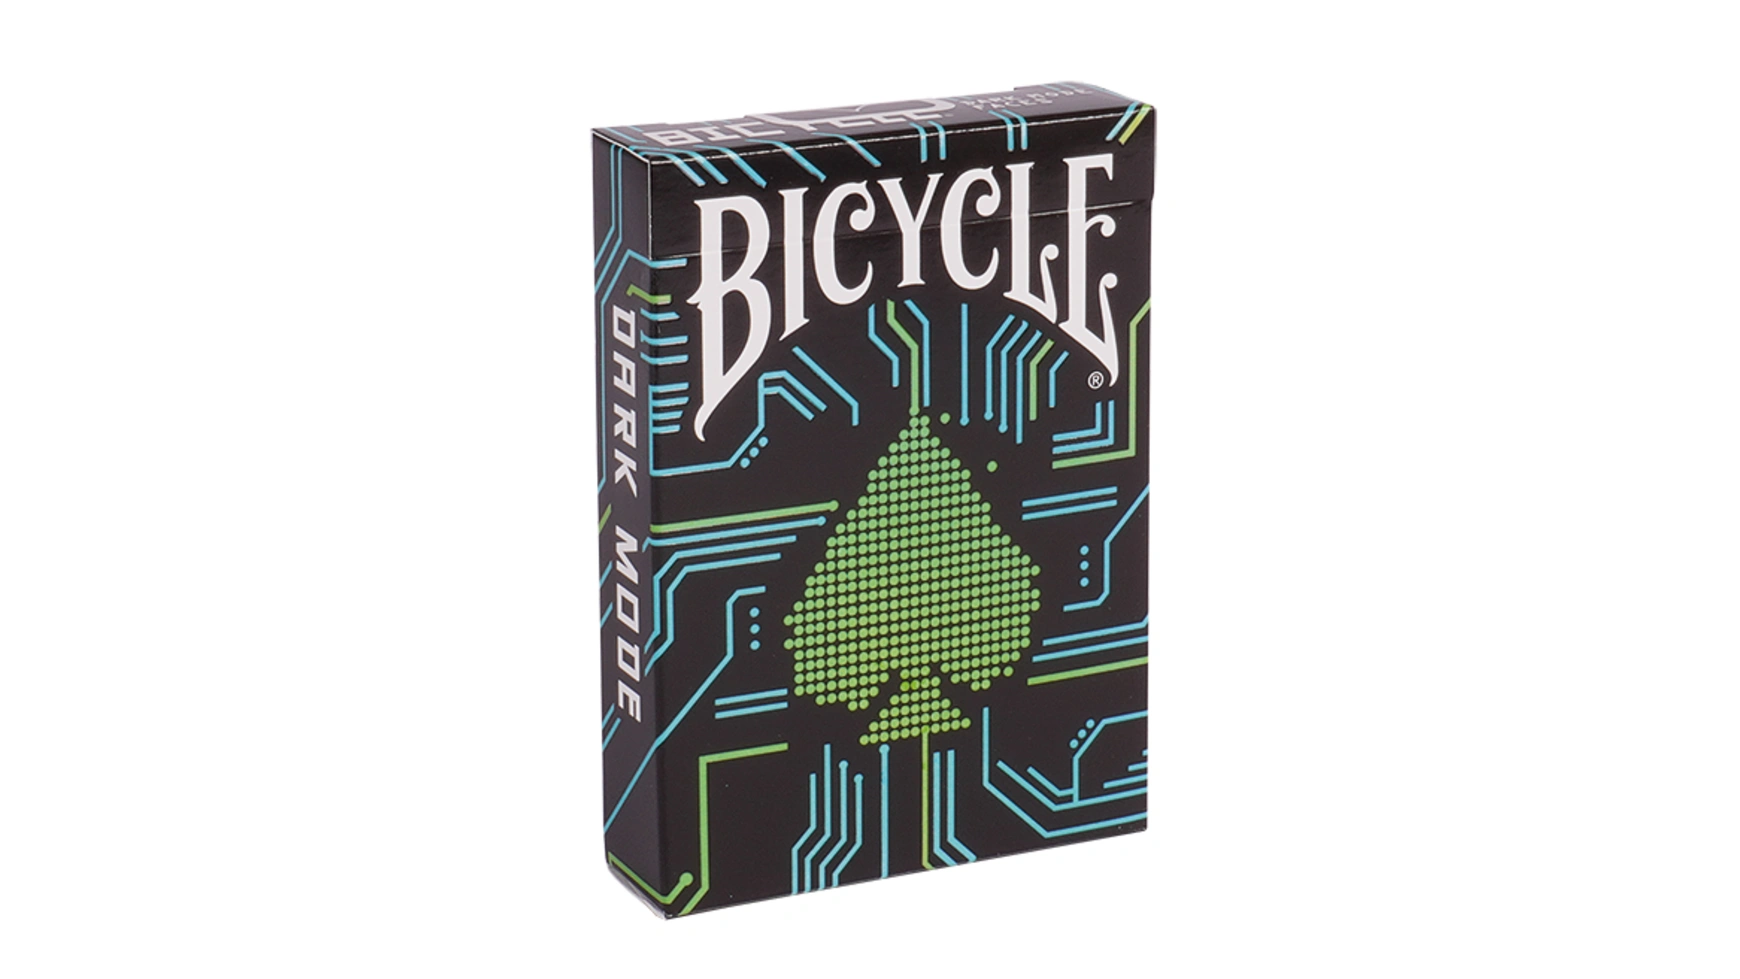 Bicycle – игральные карты в темном режиме uspcc игральные карты bicycle pro poker peek uspcc сша 54 карты